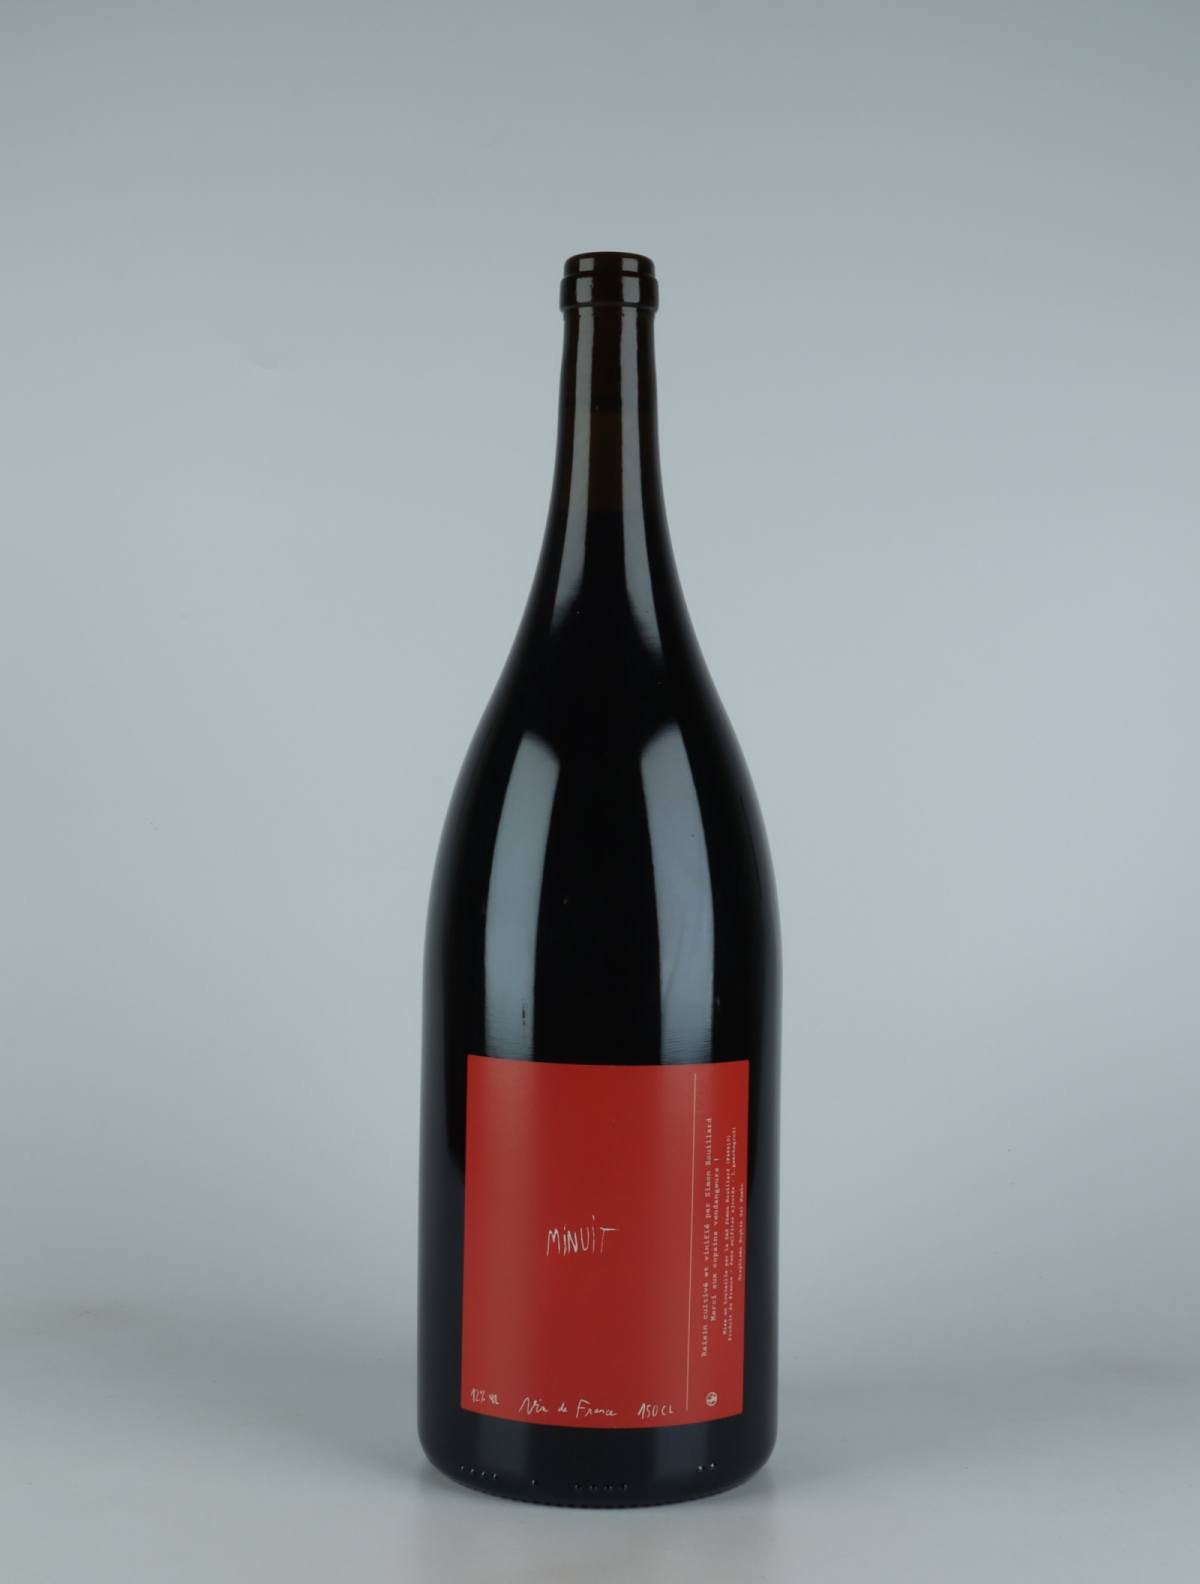 A bottle 2021 Minuit Red wine from Simon Rouillard, Loire in France